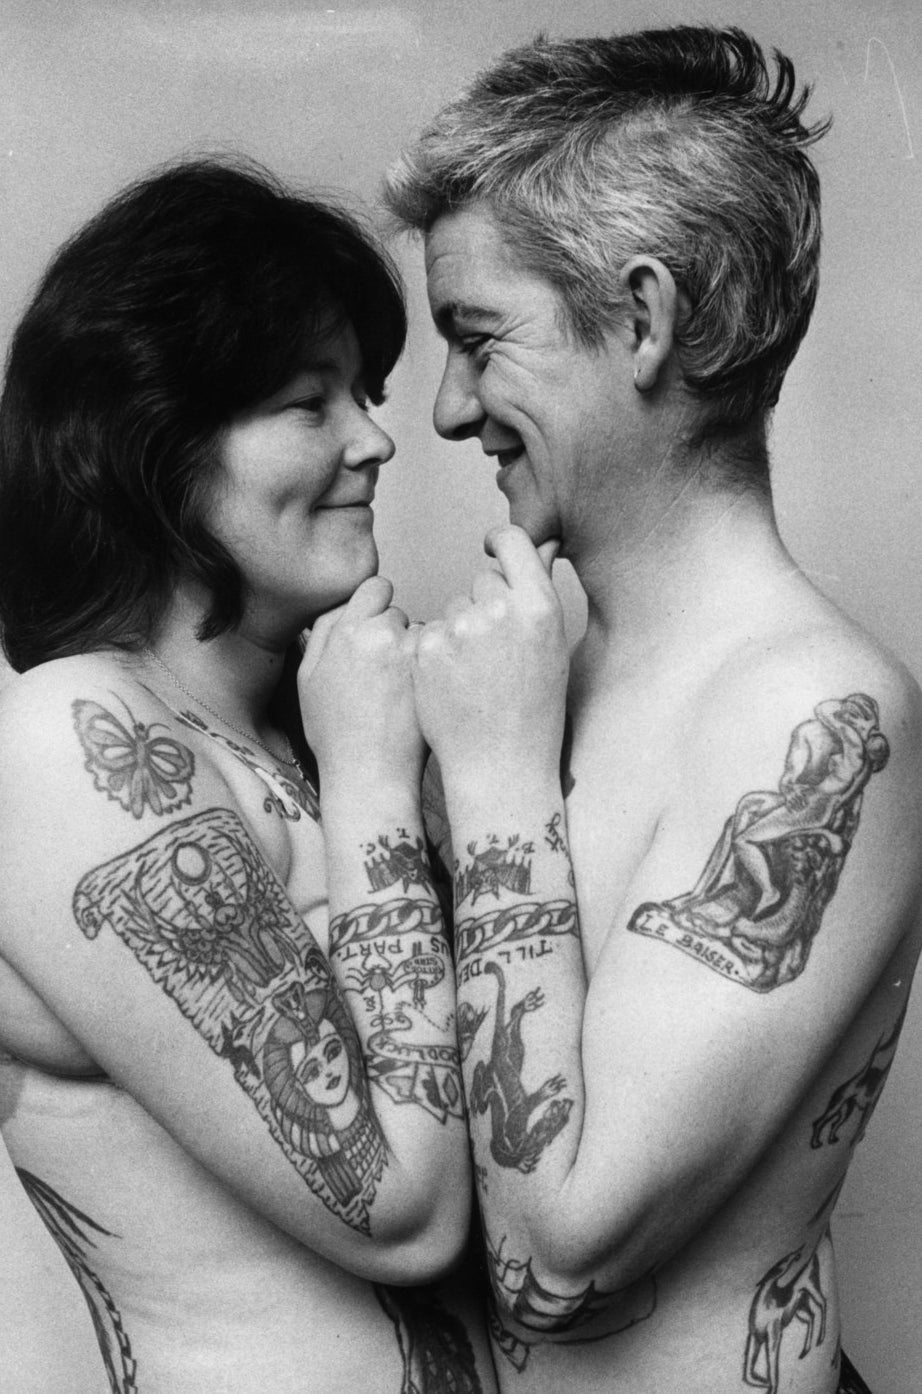 Ivor y Marianne Collier muestran su adoración y gusto mutuos por los tatuajes. 1972.